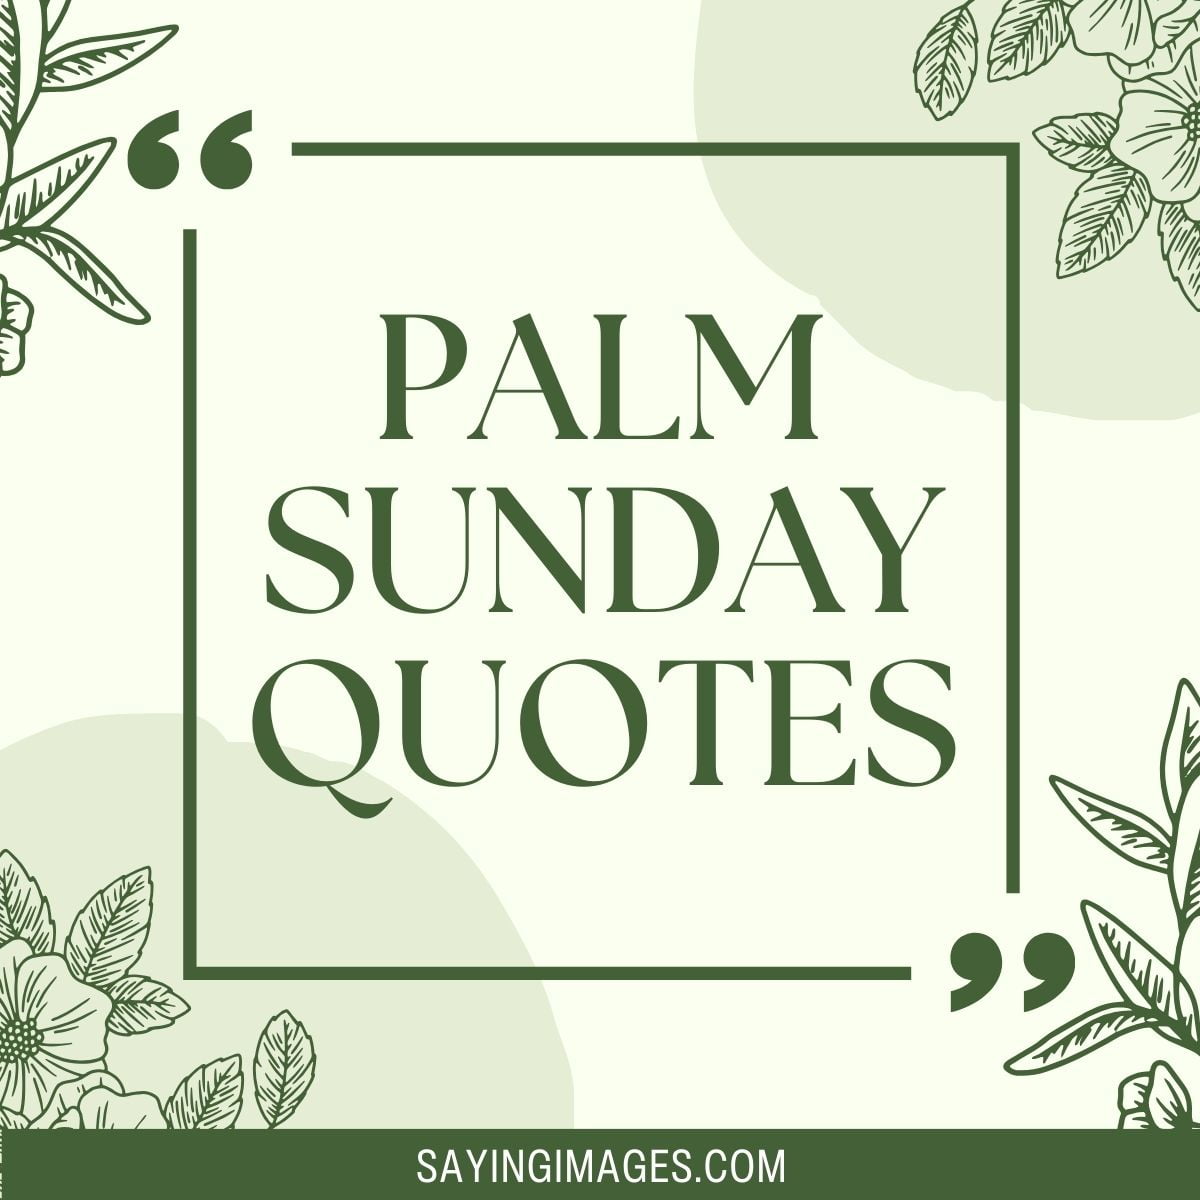 Joyful Palm Sunday Quotes